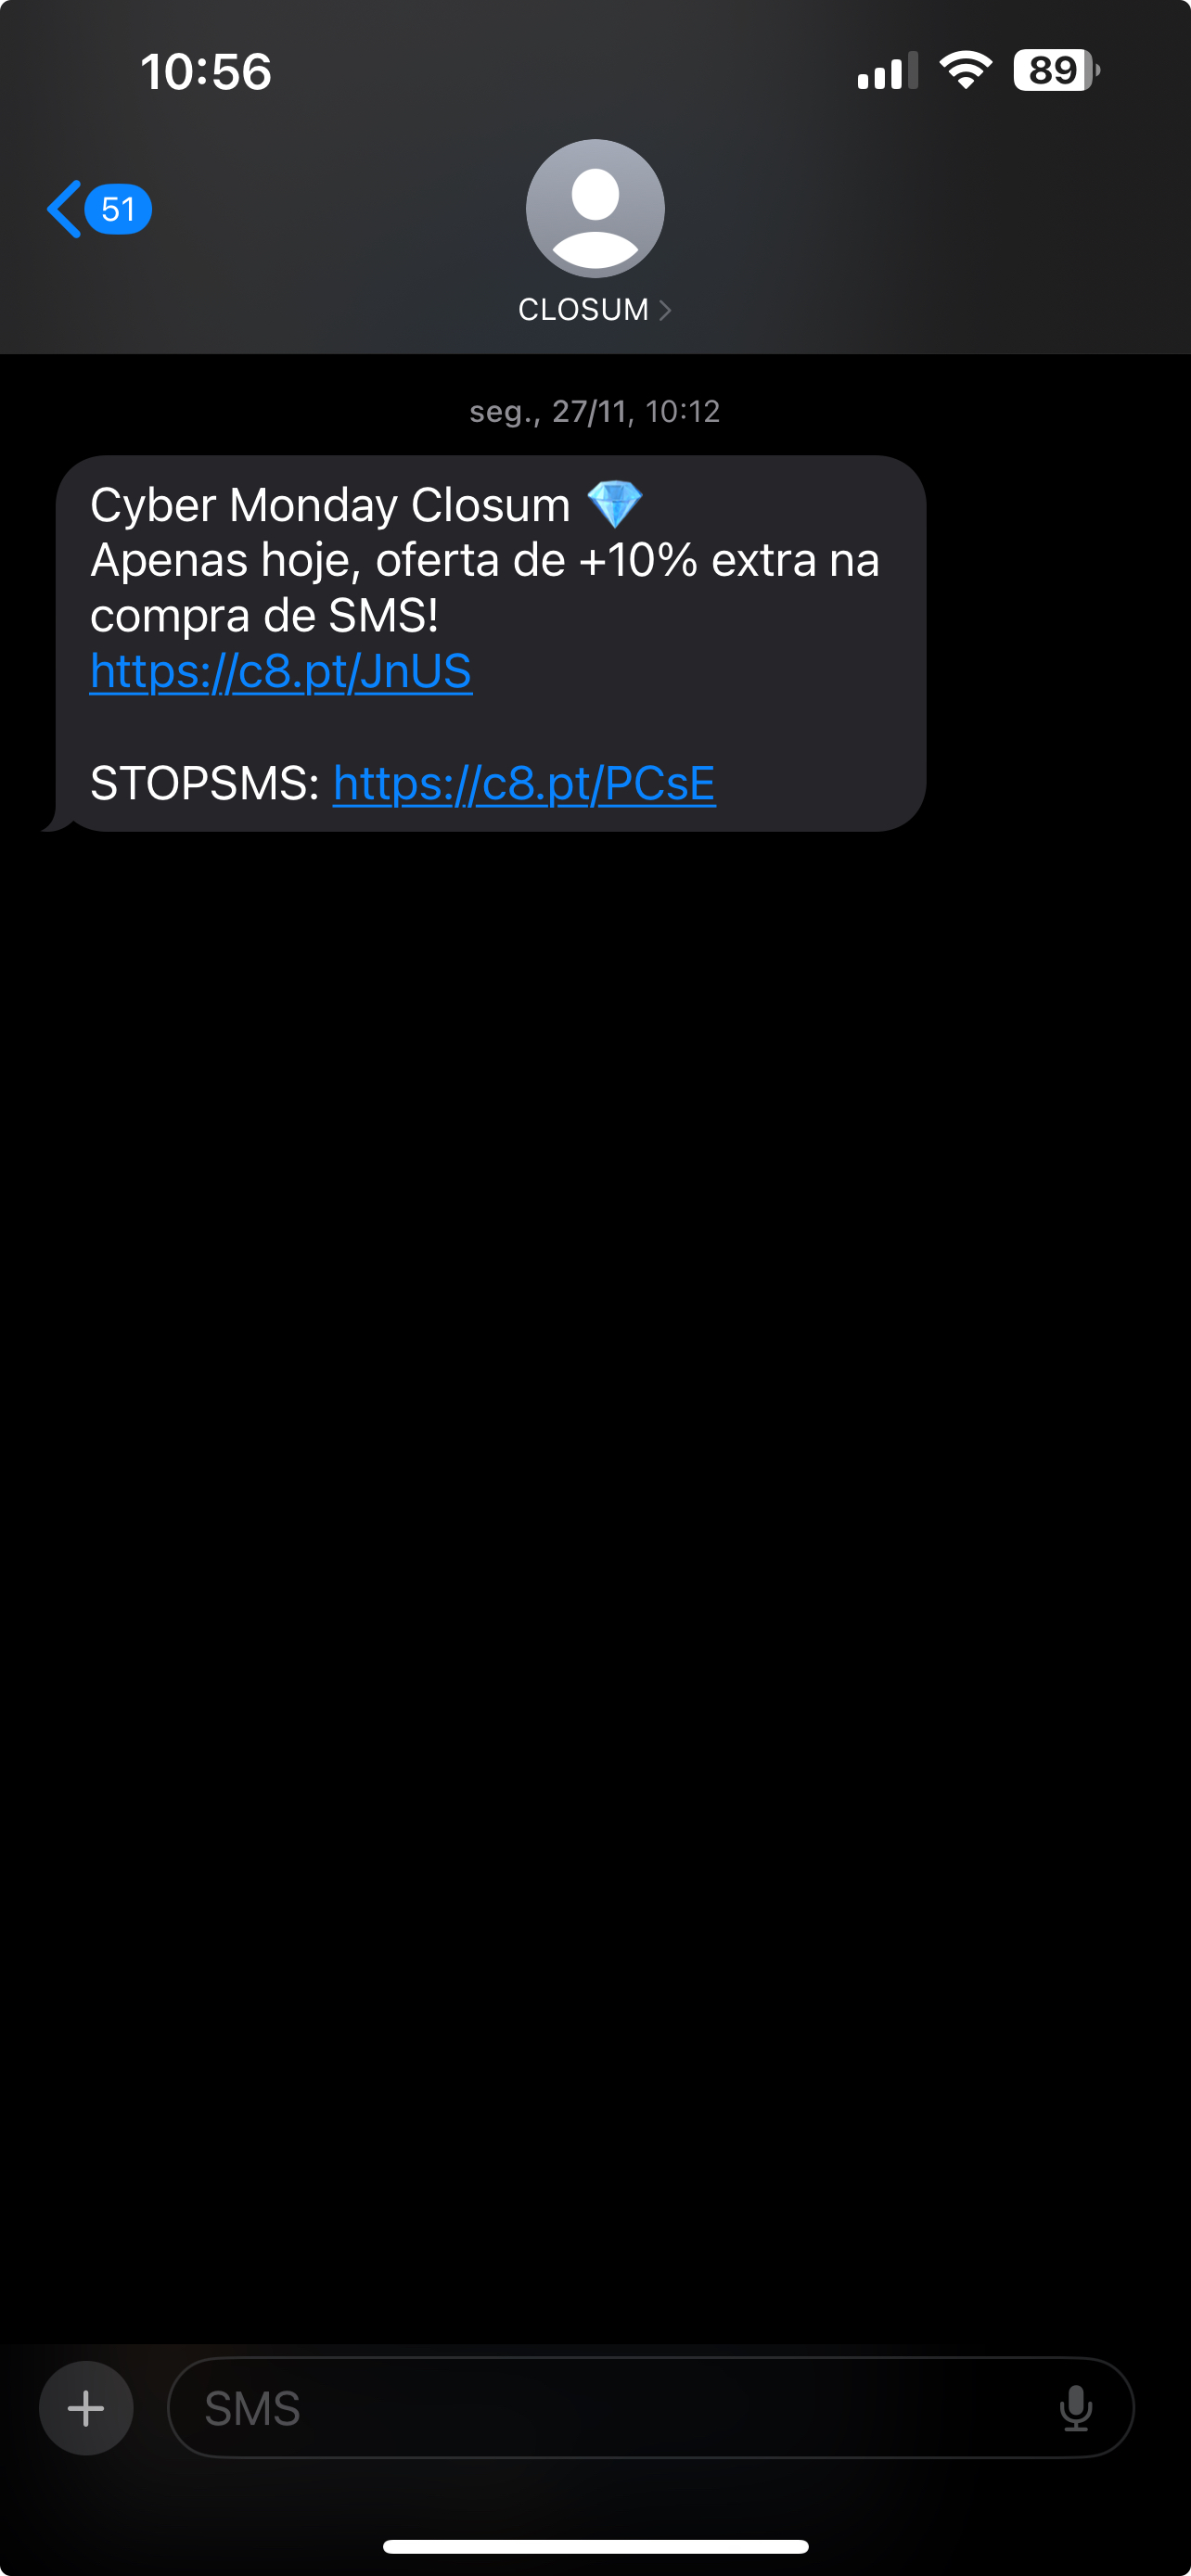 sms com opção de unsubscribe